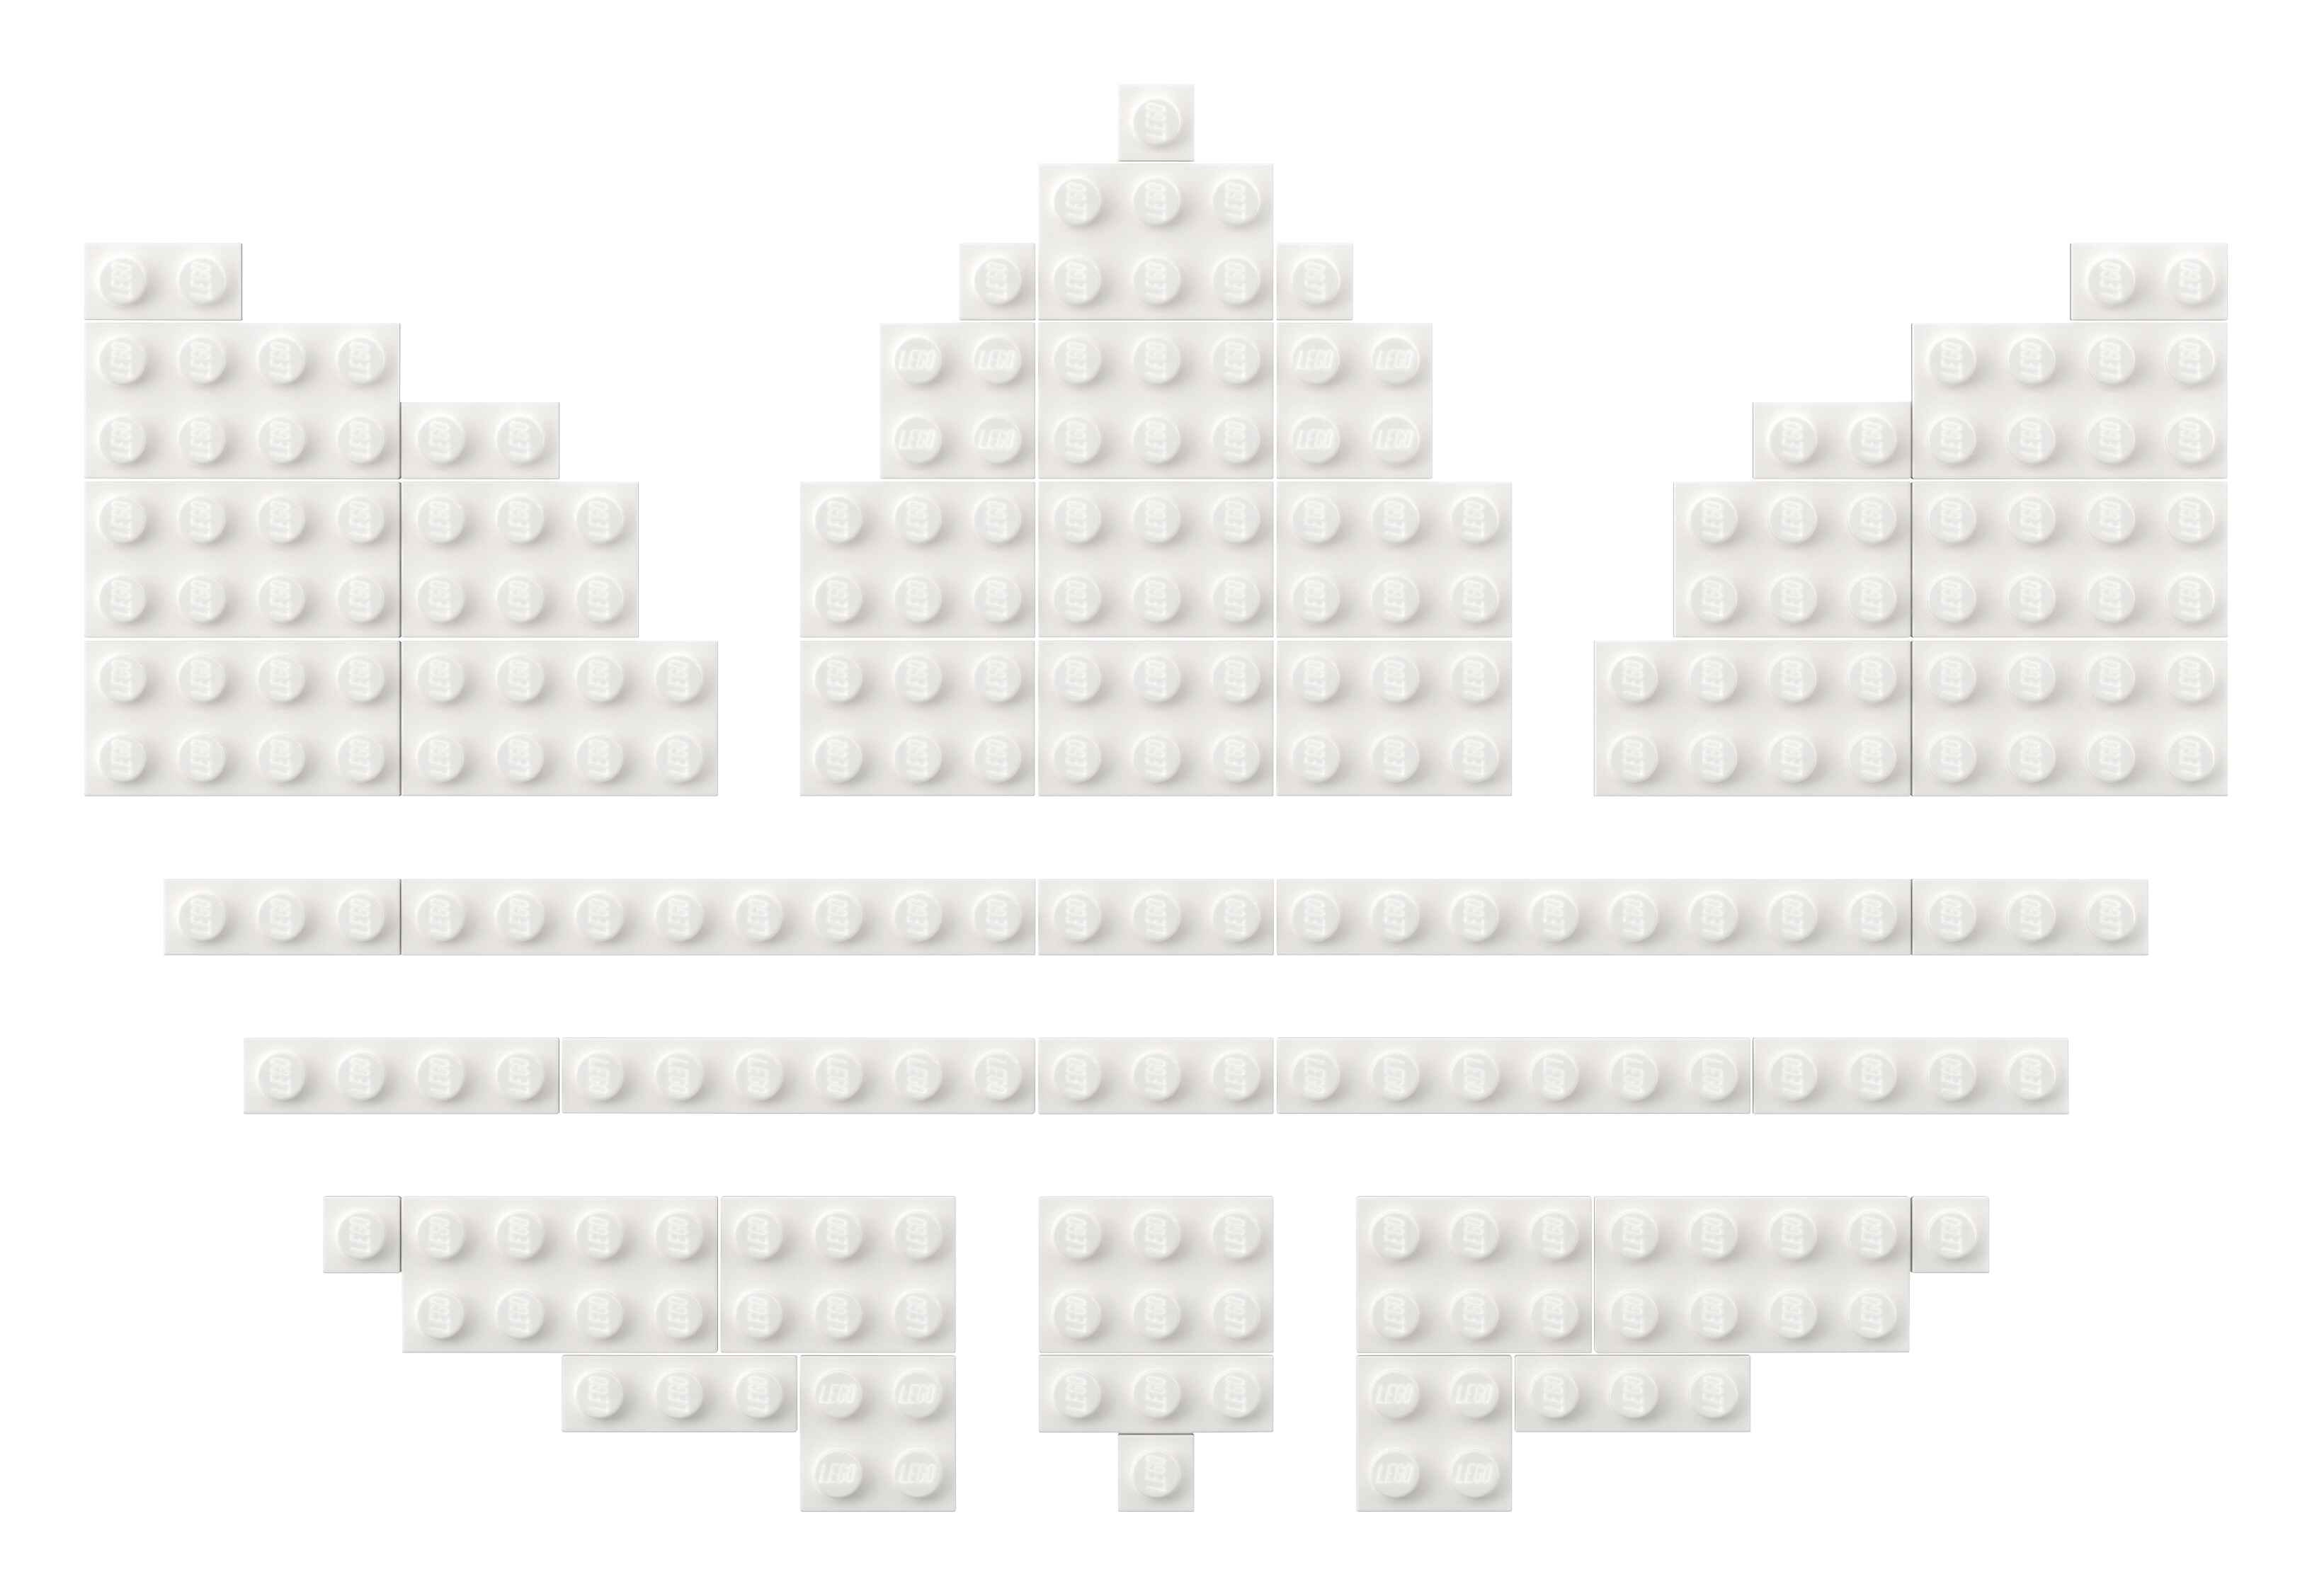 LEGO 10282 Adidas Originals Superstar, Sportschuh Sammlerstück zum Ausstellen